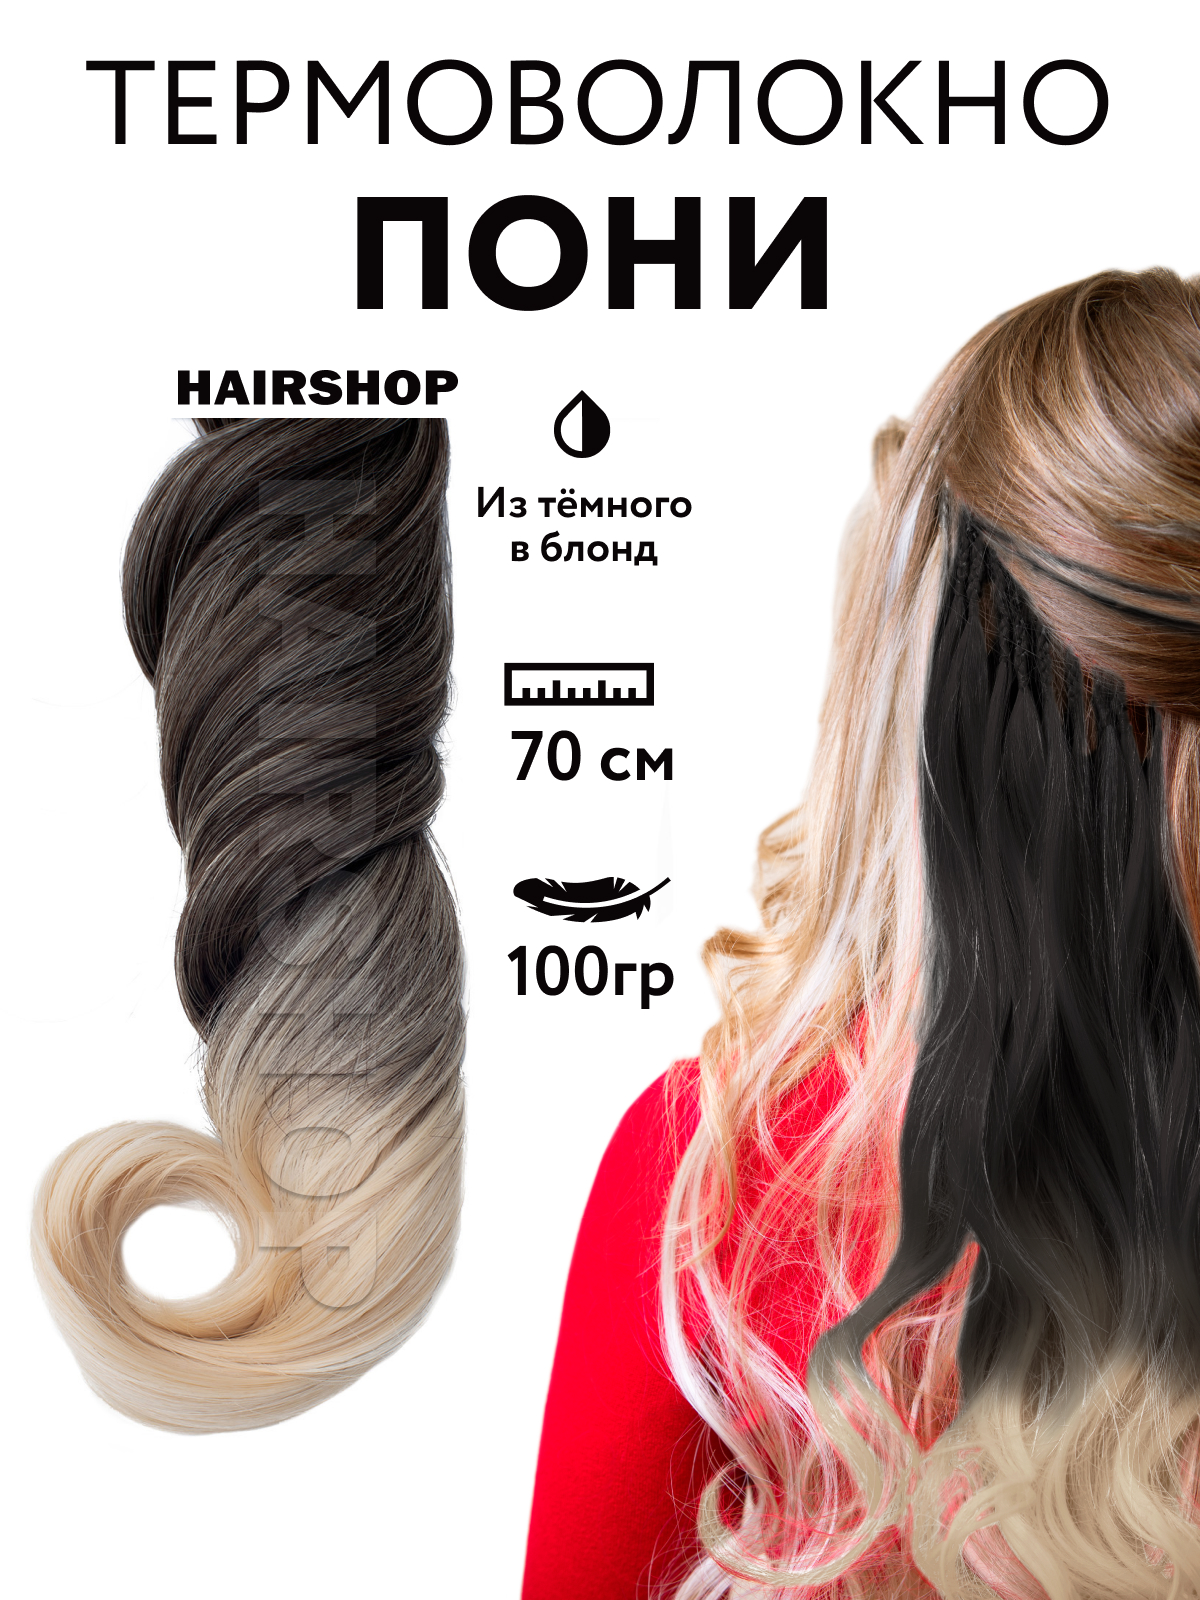 Канекалон HAIRSHOP Пони HairUp для точечного афронаращивания Из темного в блонд 1,4м канекалон hairshop пони hairup для точечного афронаращивания осенний листопад 1 4м